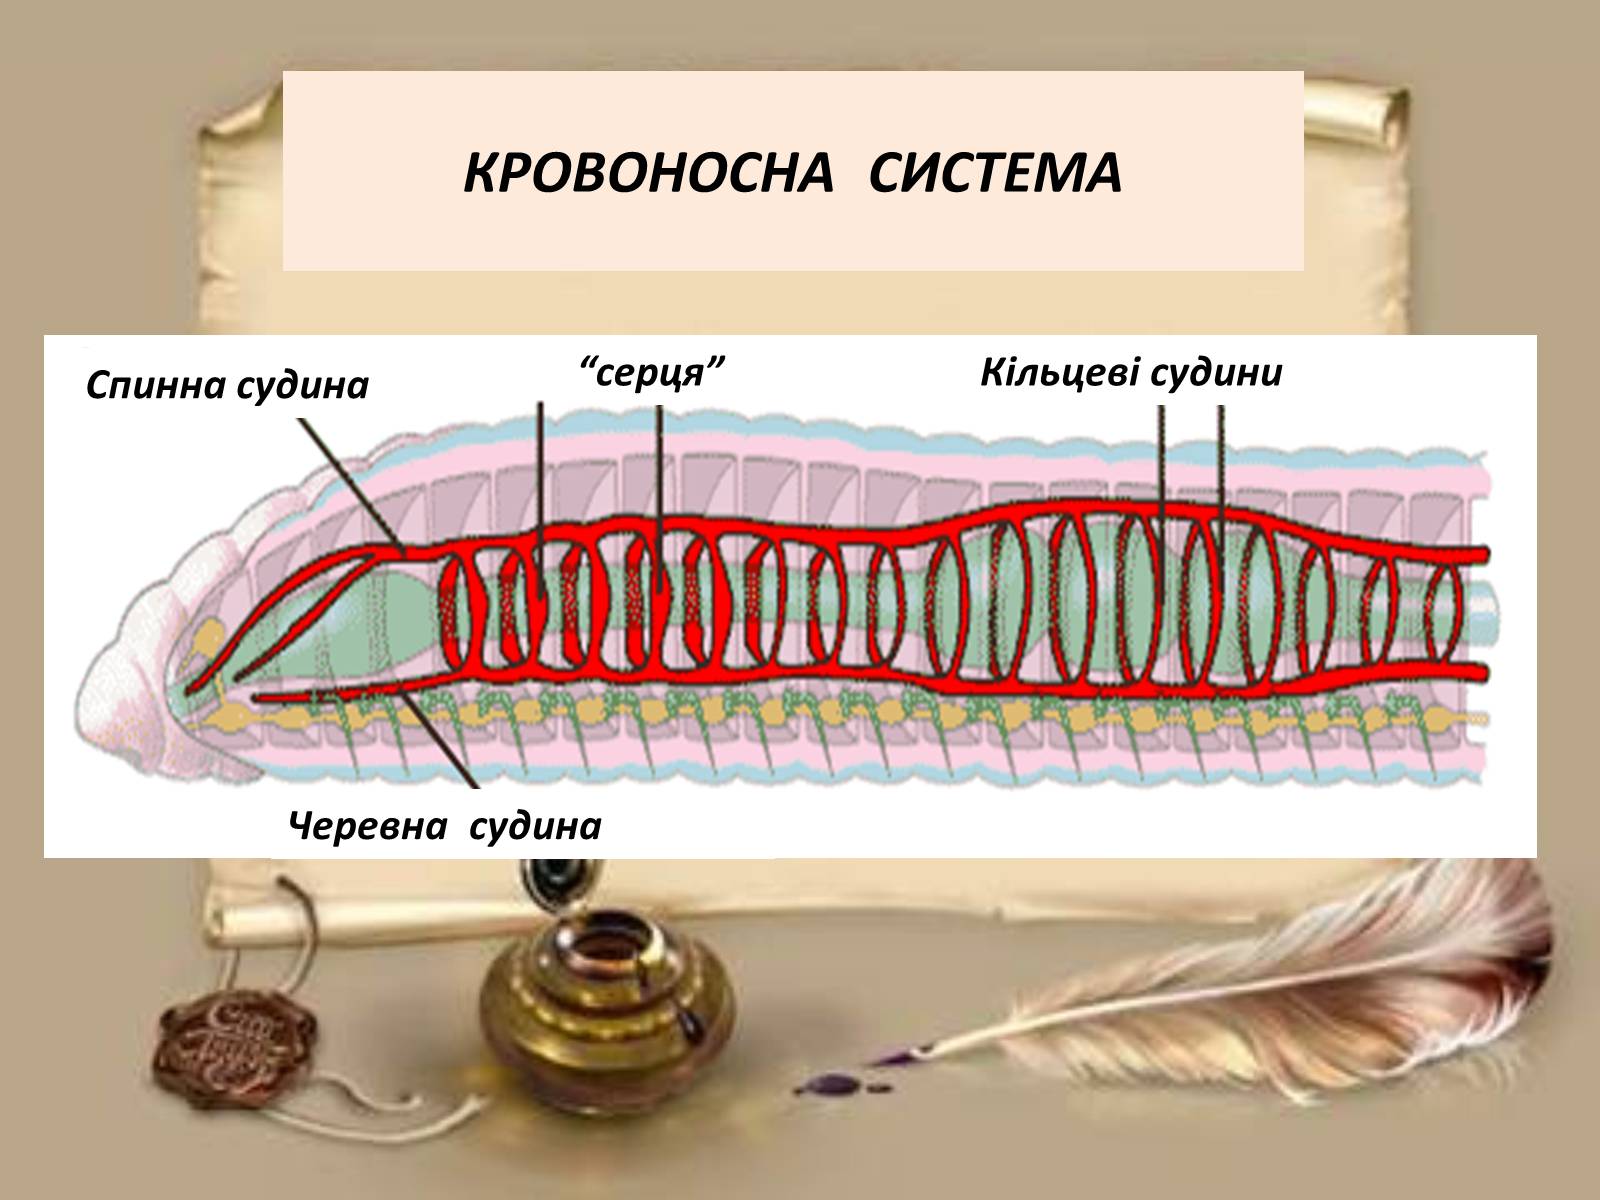 Дыхание дождевого червя. Тип кольчатые черви дыхание. Кровеносная и нервная система дождевого червя. Кровеносная система дождевого червя. Кровеносная и дыхательная система кольчатых червей.